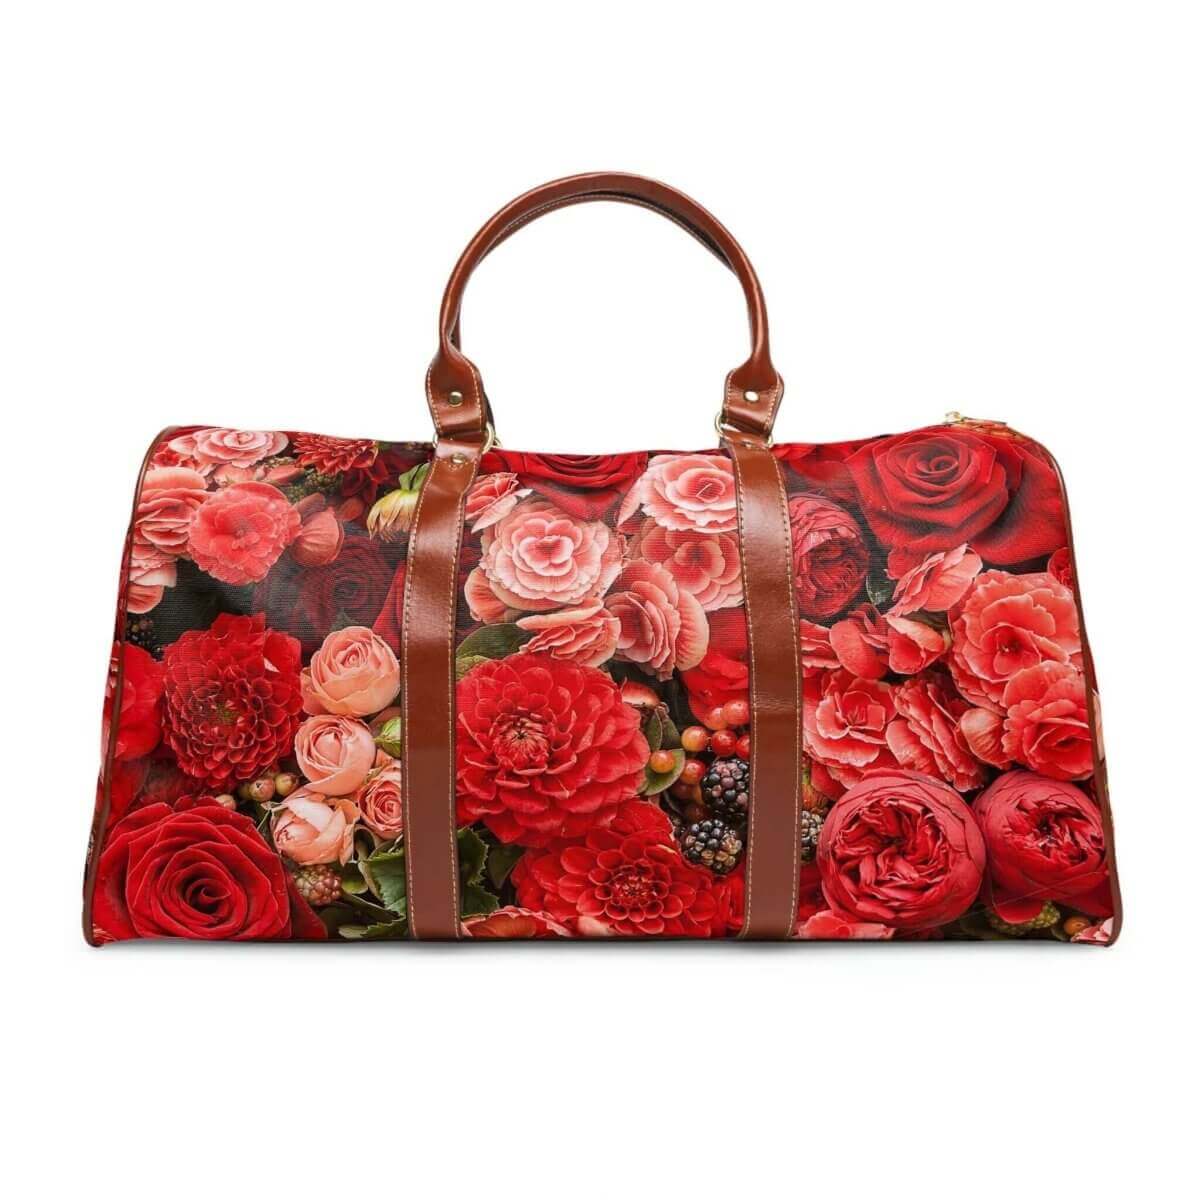 Rose Design - Waterproof Travel Bag - 2